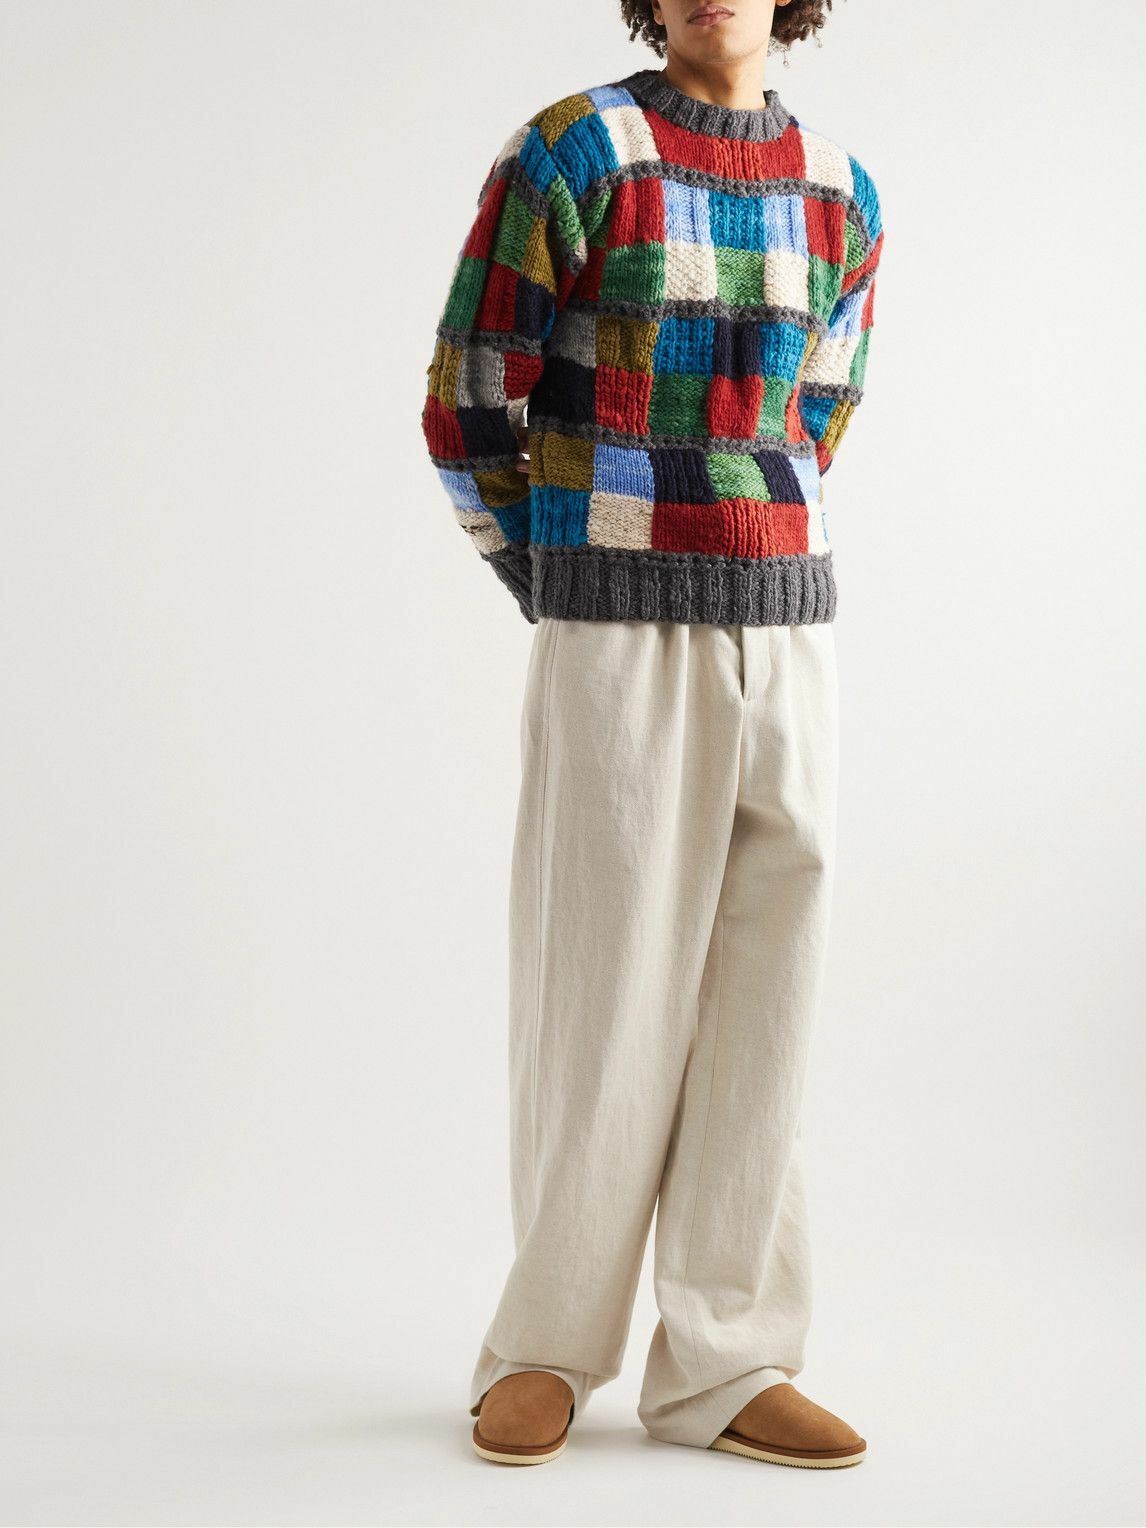 Chamula - Crocheted Merino Wool Sweater - Multi Chamula